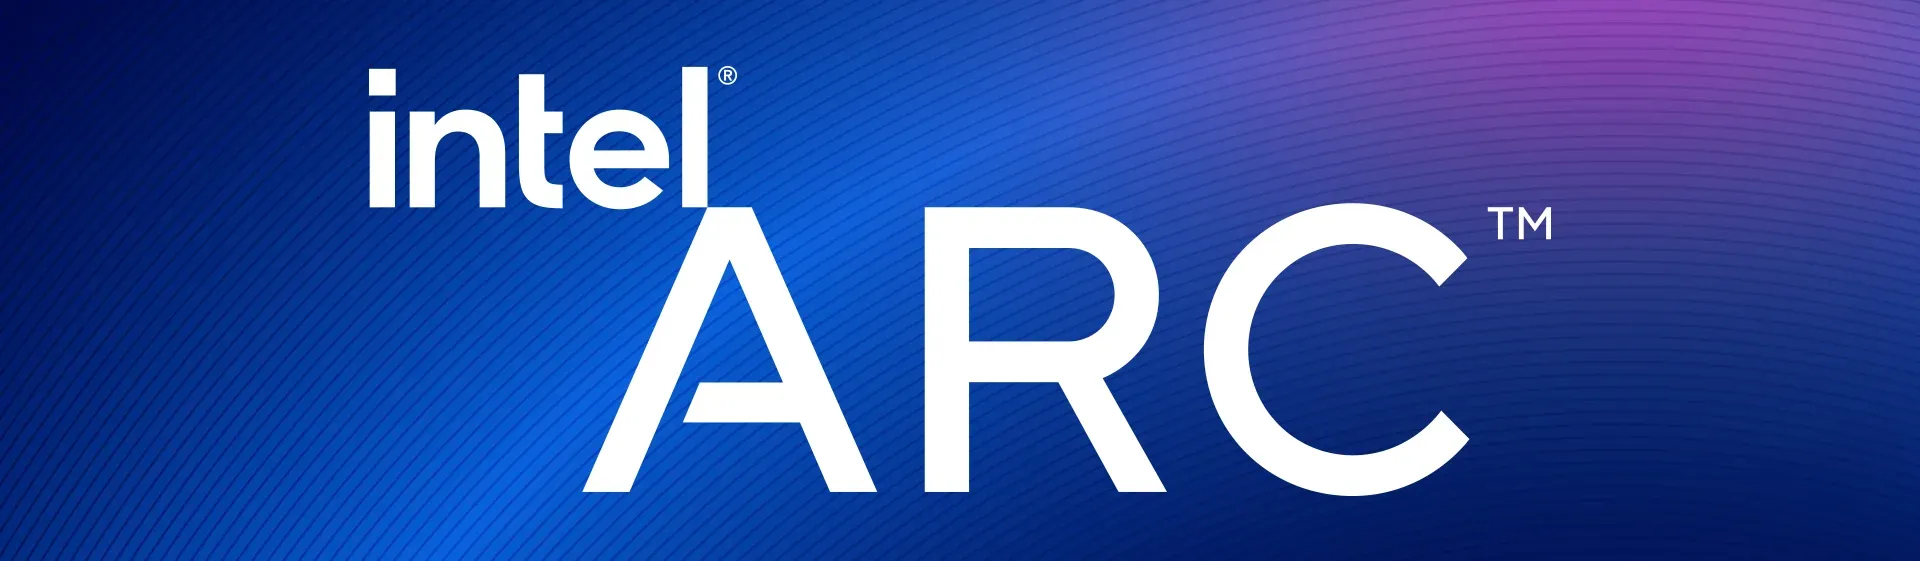 Logo do Intel Arc com fundo em tons misturados de azul e roxo